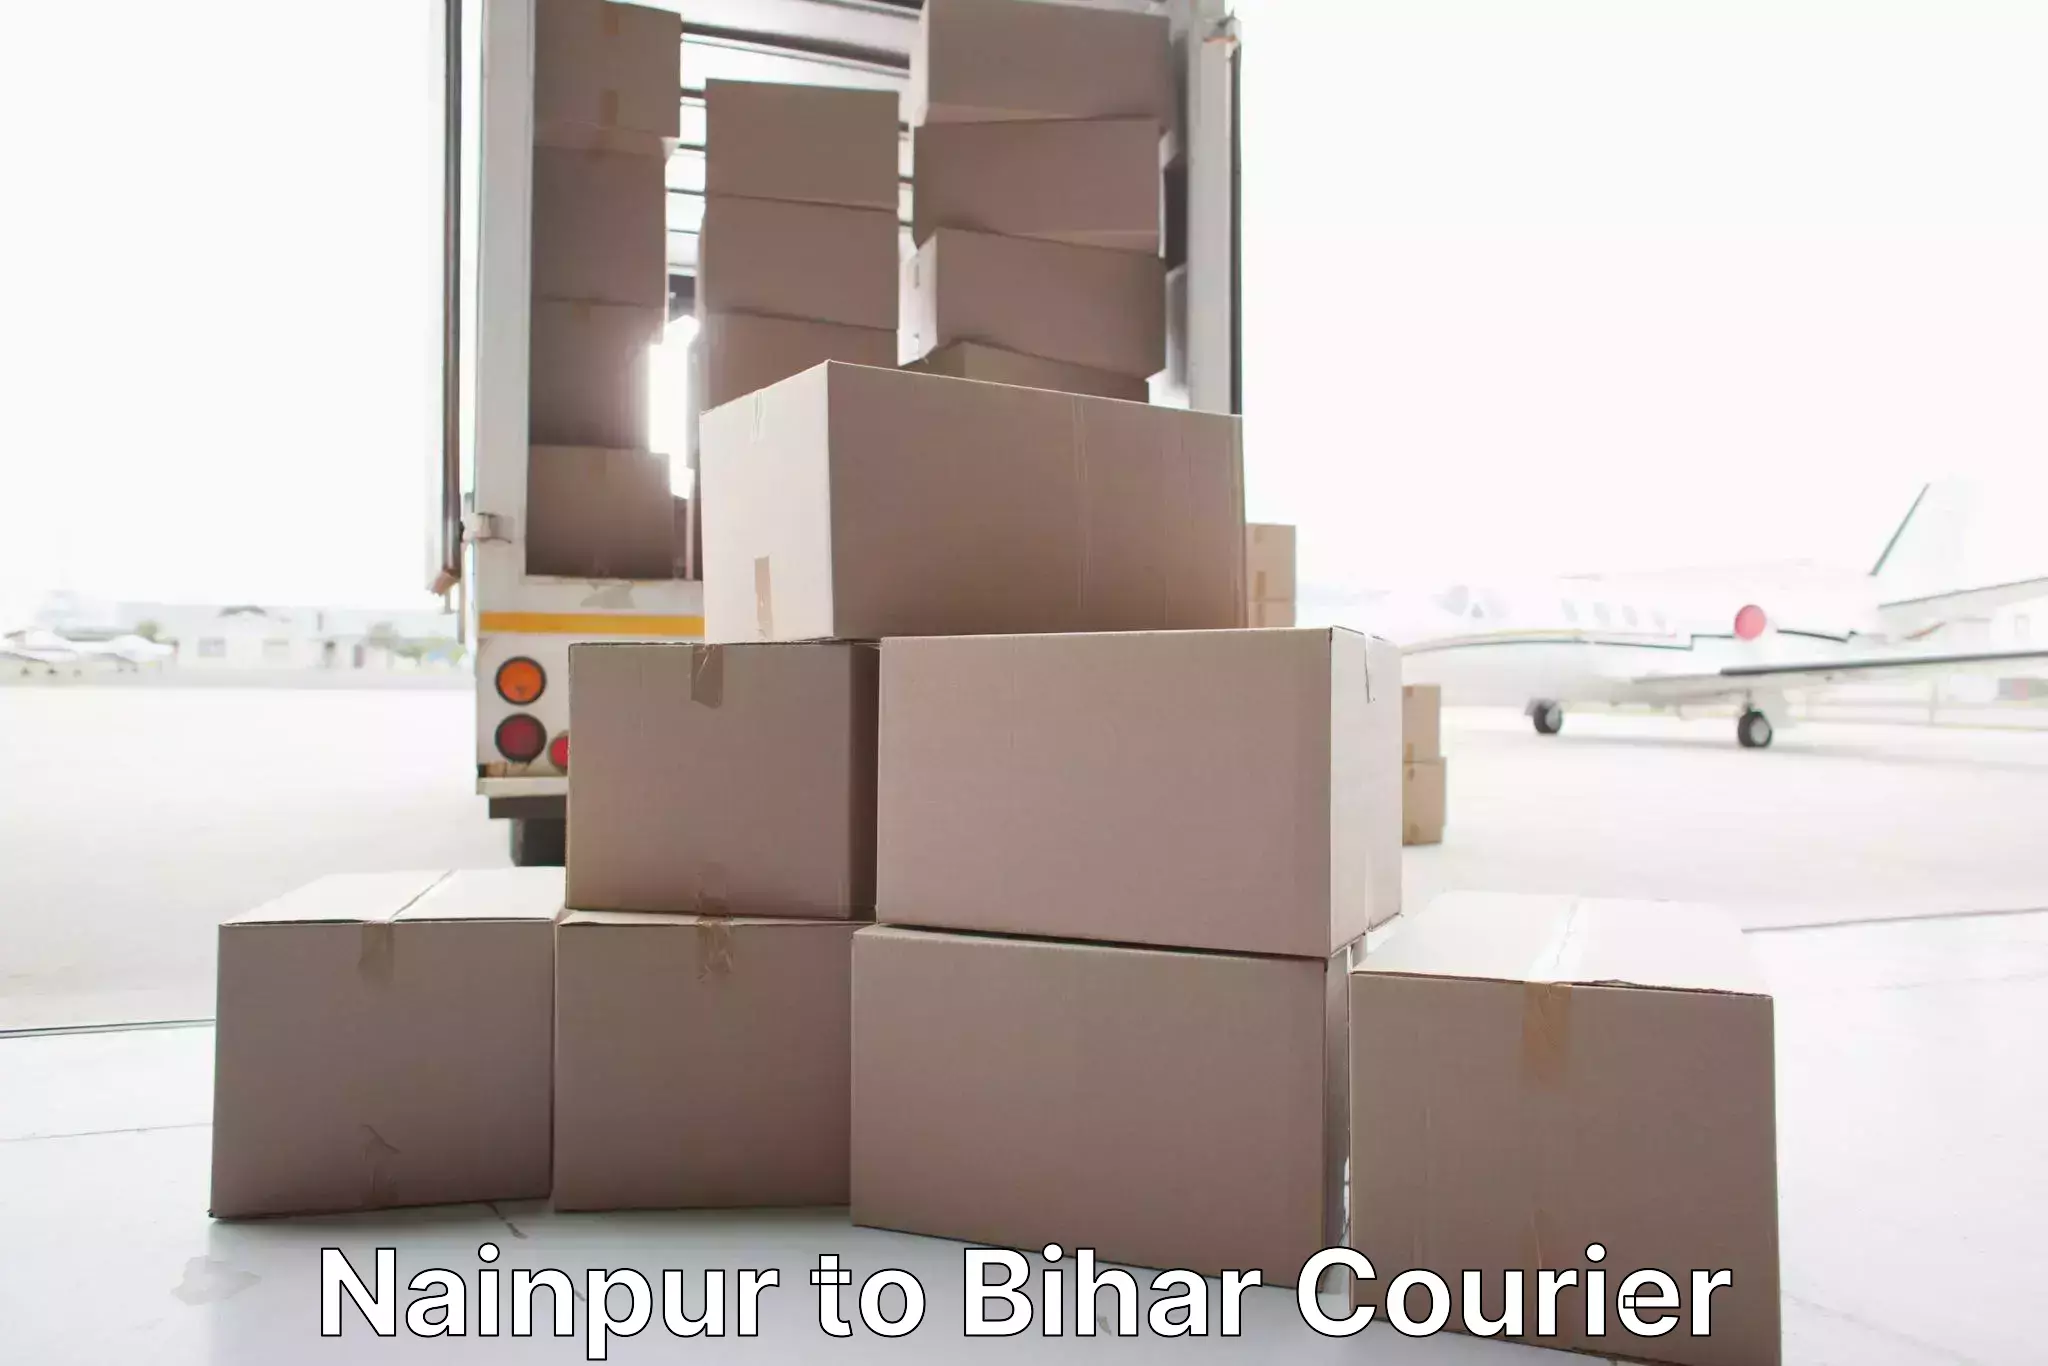 Professional furniture movers Nainpur to Patna